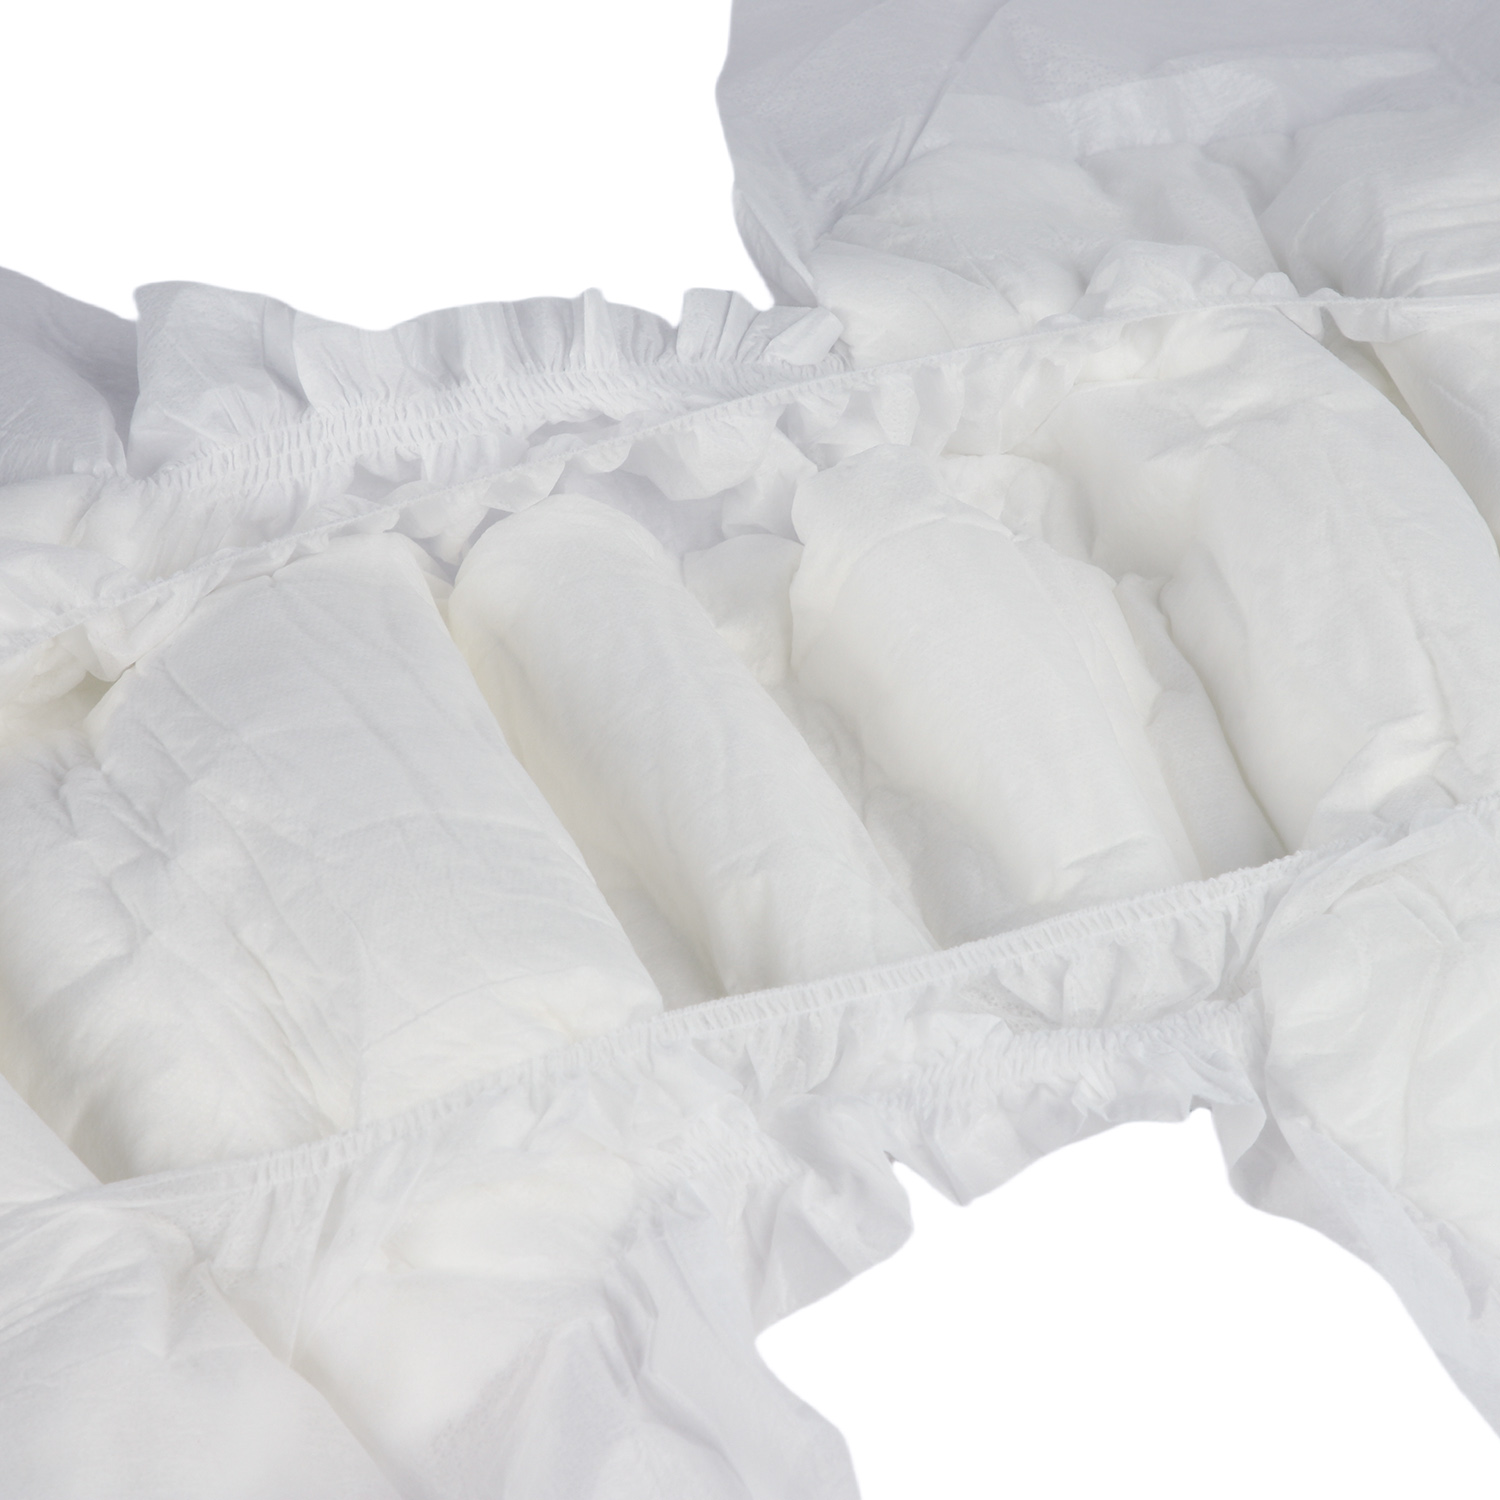 Pañales para adultos ultraabsorbentes: revolucionando la comodidad y el cuidado